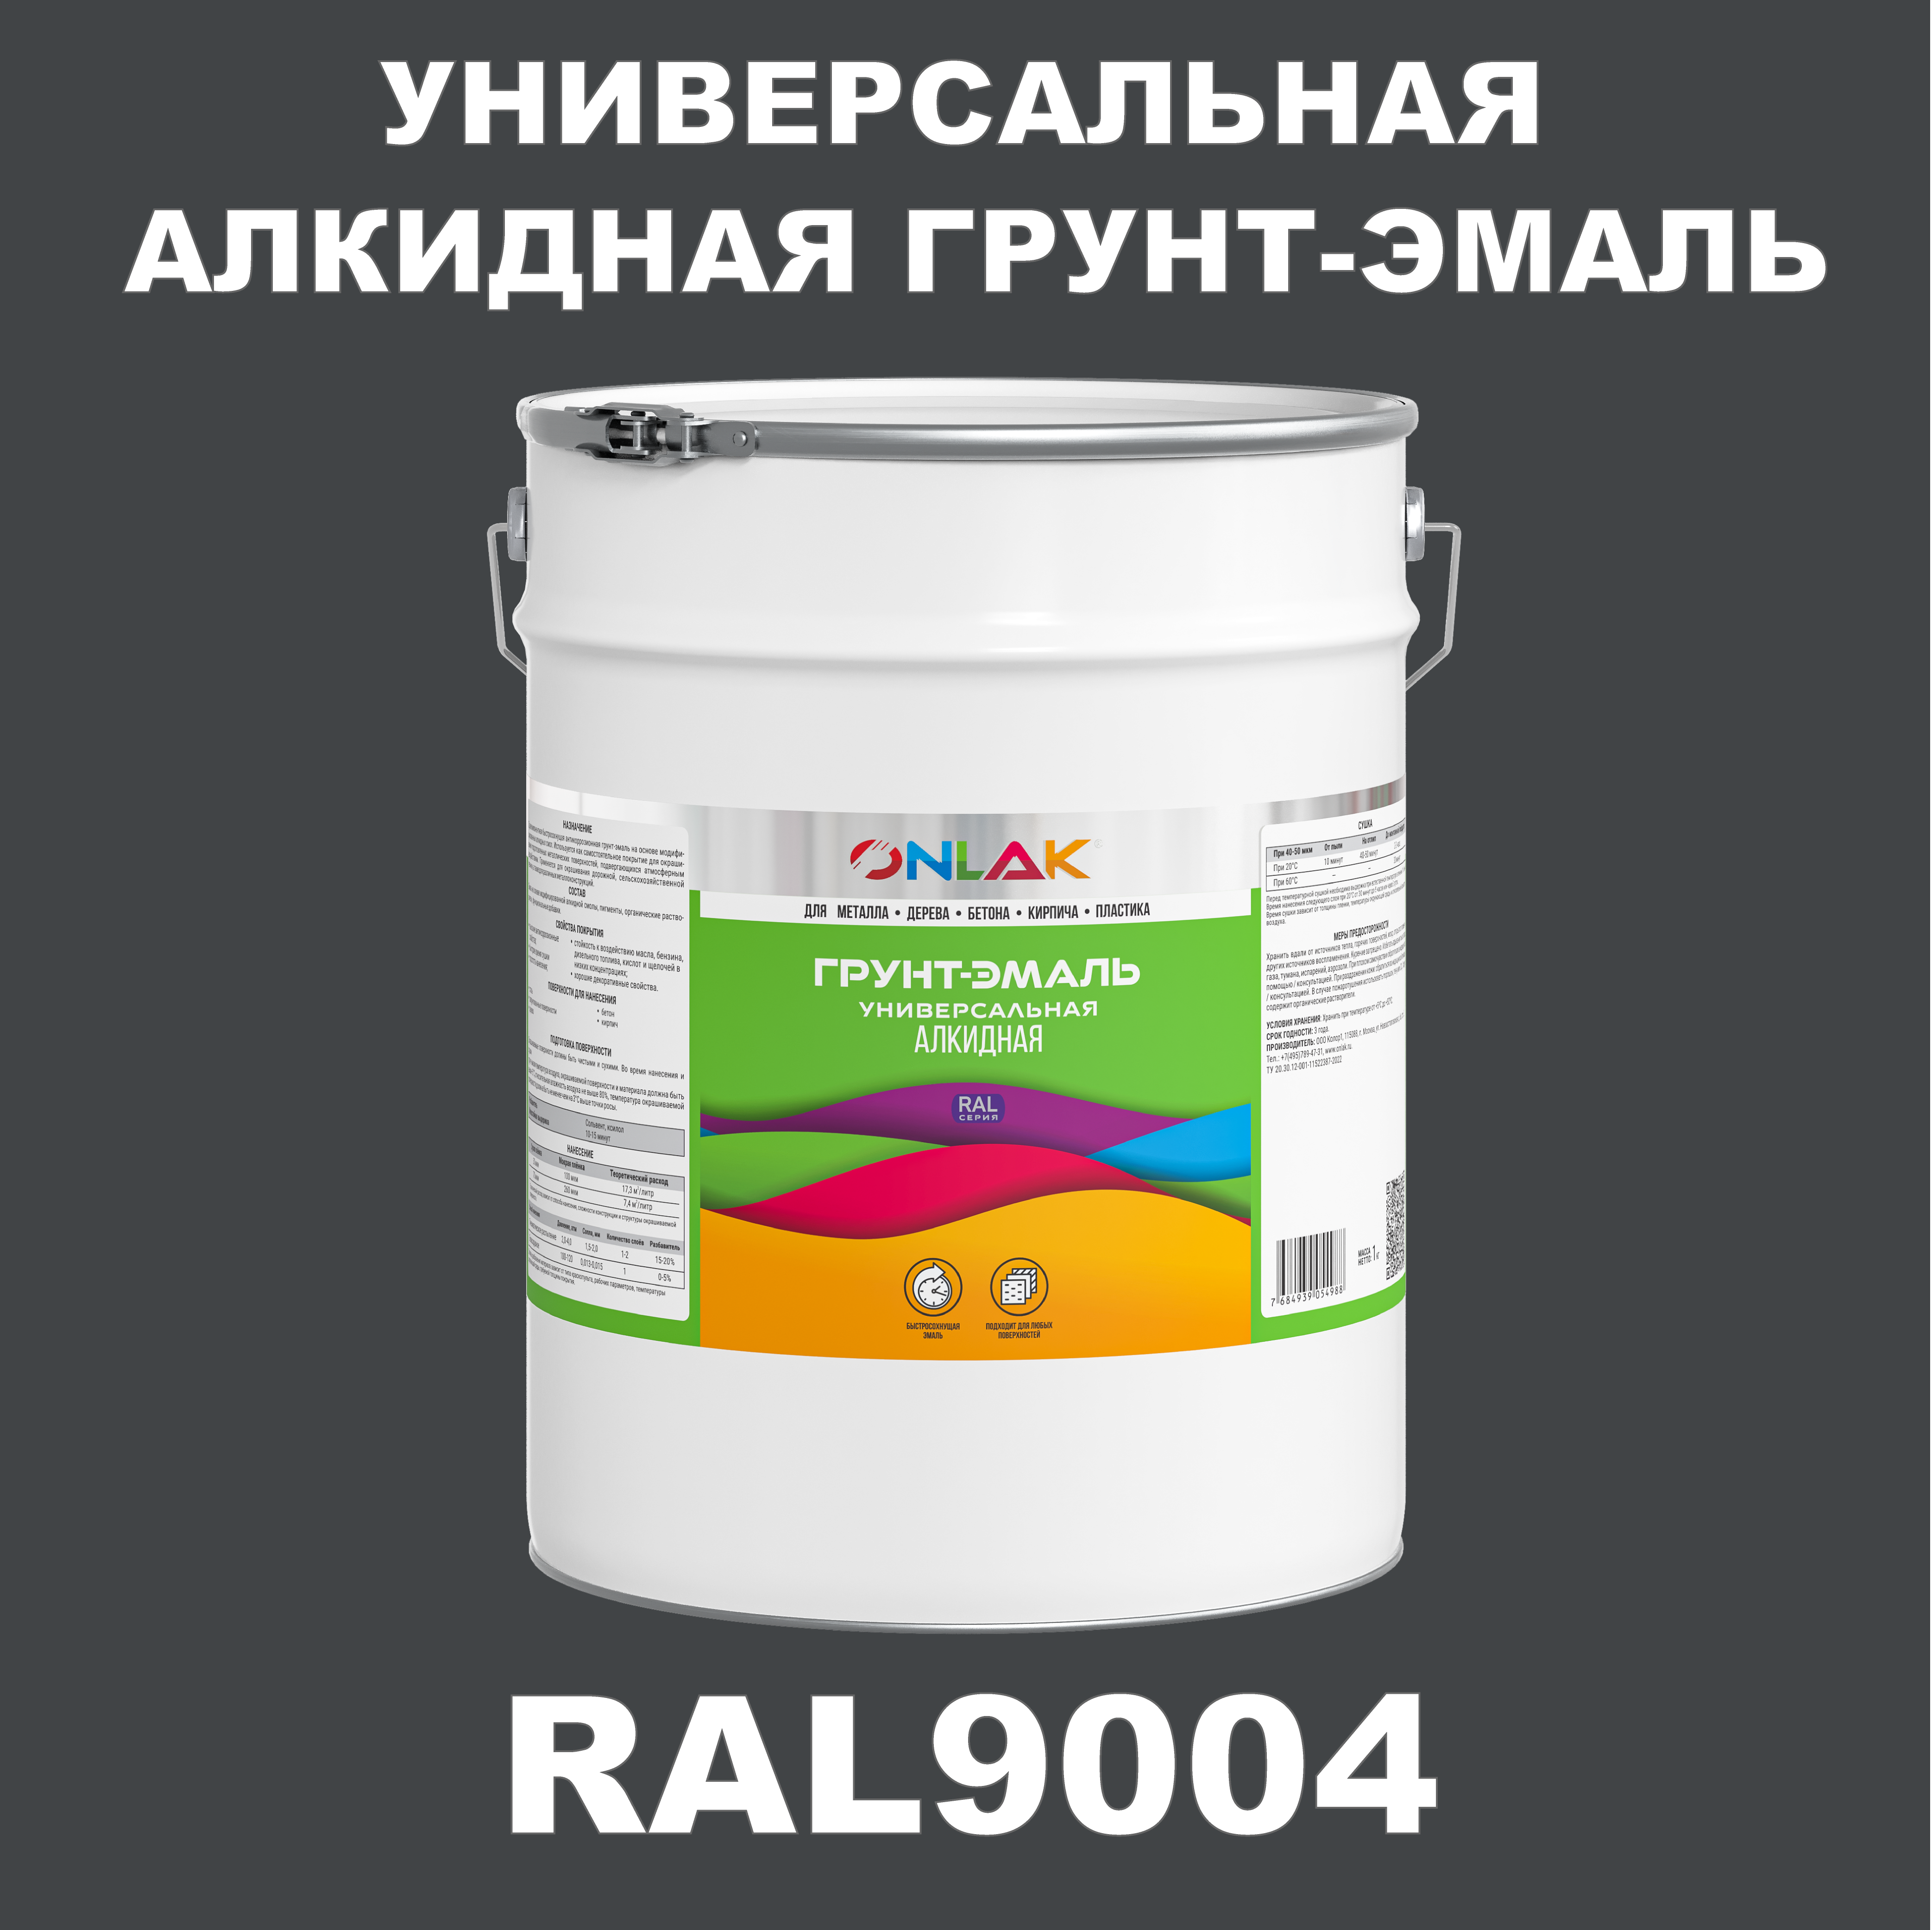 Грунт-эмаль ONLAK 1К RAL9004 антикоррозионная алкидная по металлу по ржавчине 20 кг